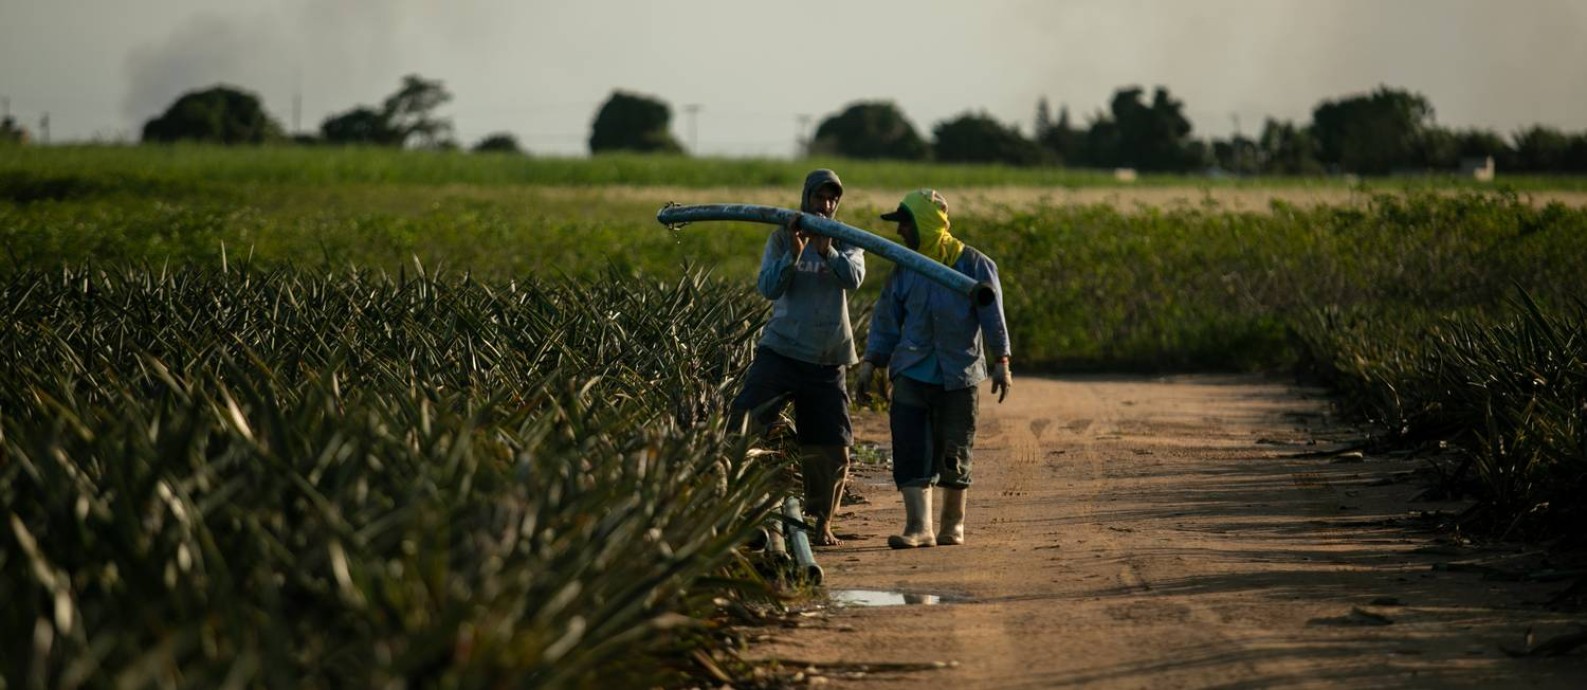 A produção de abacaxi em São Francisco de Itabapoana: grande parte do PIB do município é oriunda da agricultura Foto: Brenno Carvalho / Agência O Globo